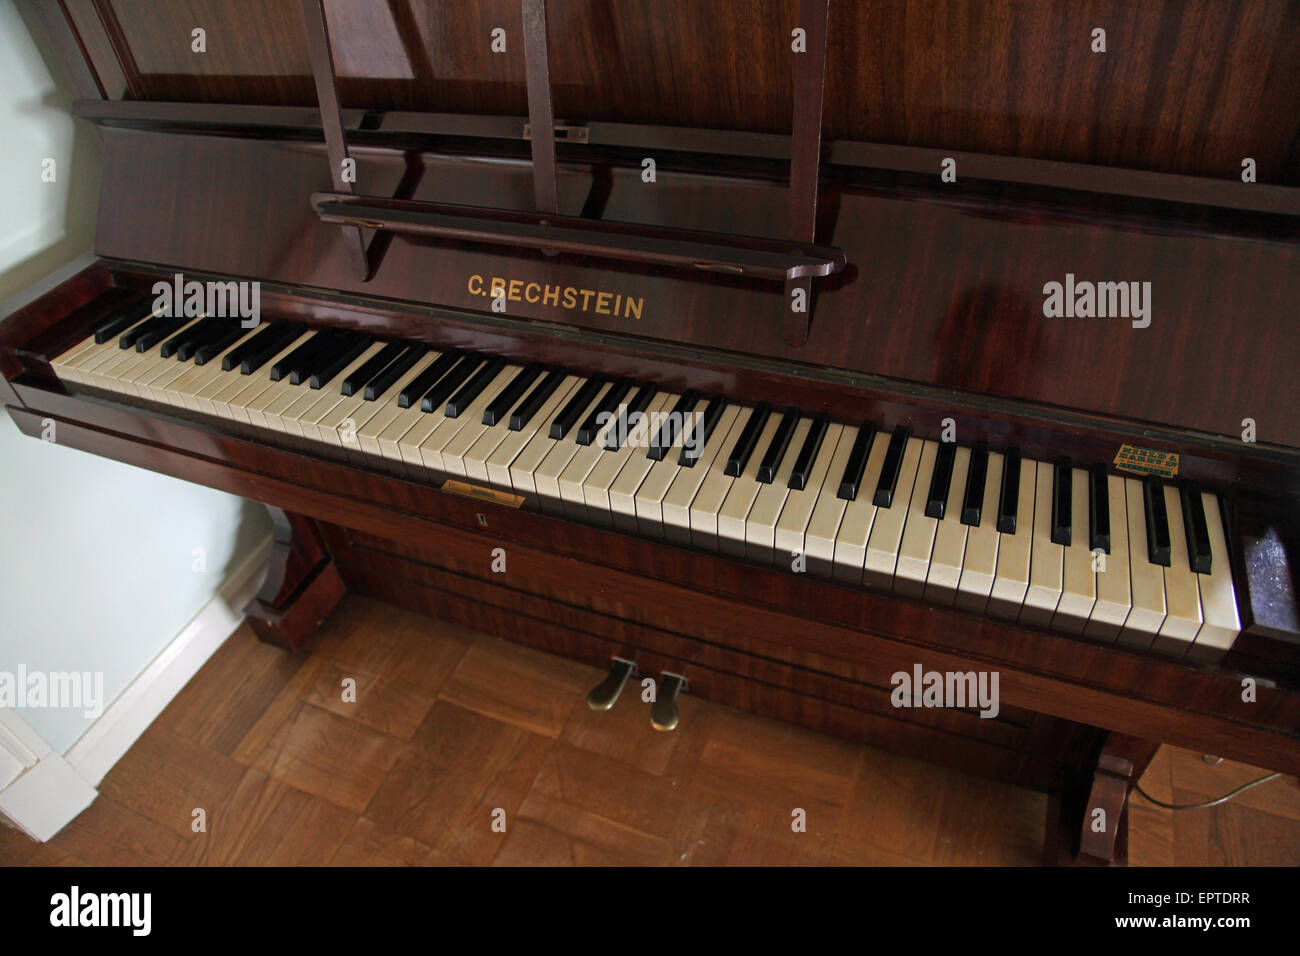 das Klavier Tasten der Tastatur von einem Mahagoni C Bechstein-Klavier aus dem Jahr 1905 mit dem Deckel oben Stockfoto